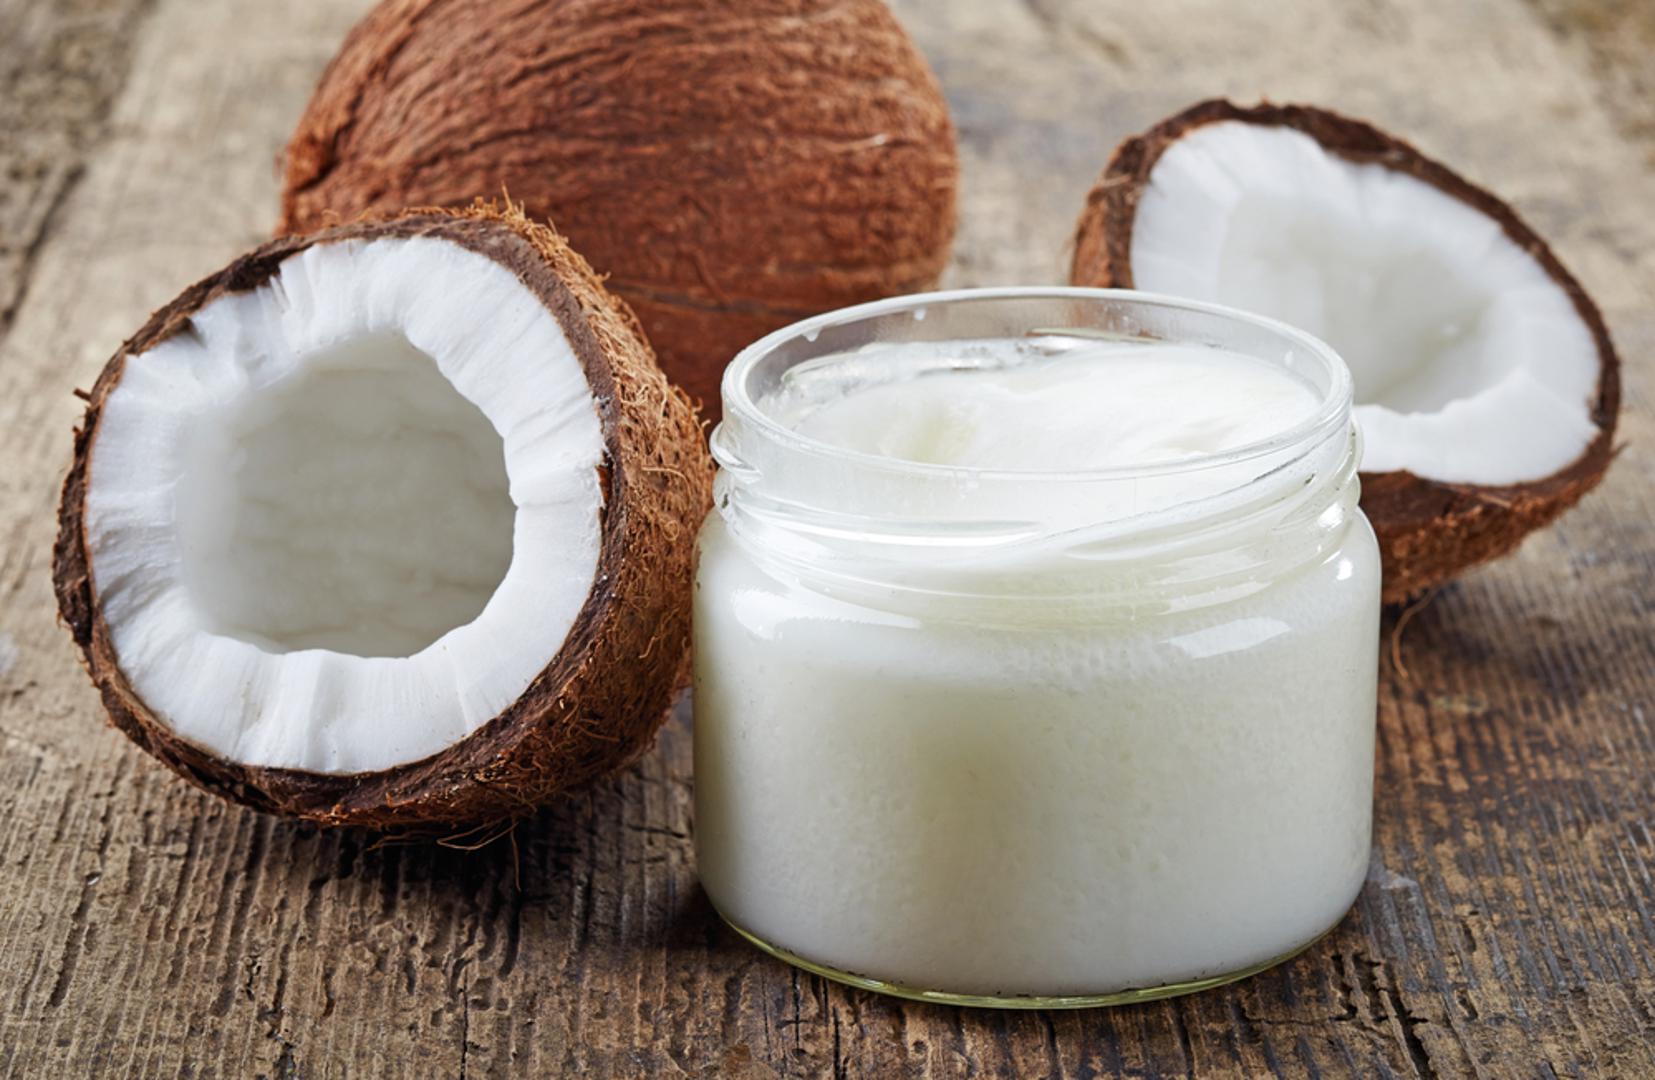 Kokosovo ulje – Smanjuje bore jer sadrži vitamin E. Mažite se njime navečer kako bi imali sjajnu i zategnutu kožu ujutro, a možete ga koristiti i u prehrani umjesto maslinova ili biljnog ulja.